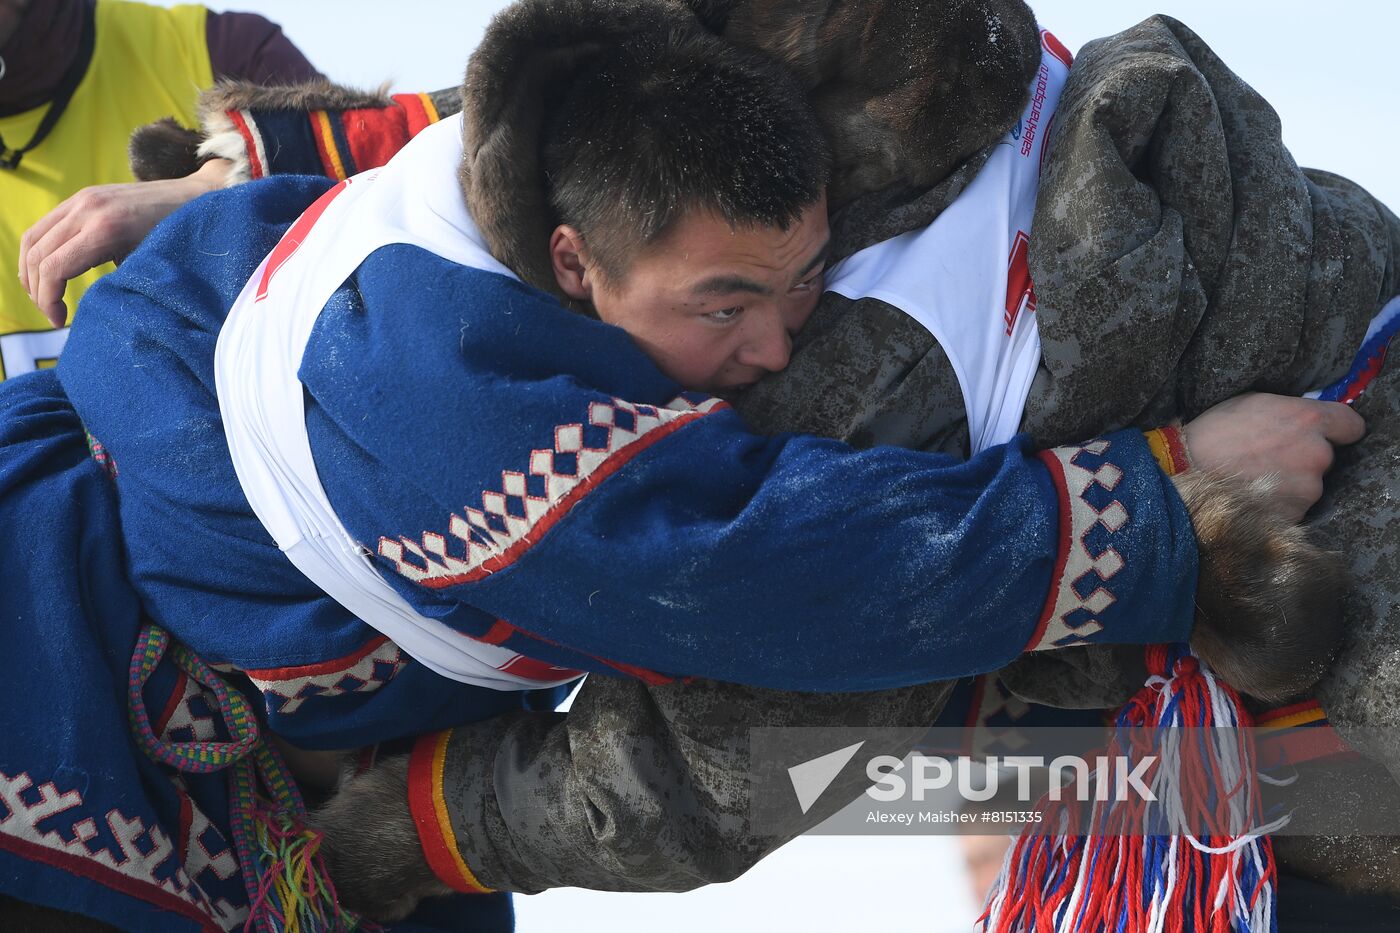 Russia Reindeer Herder's Day 